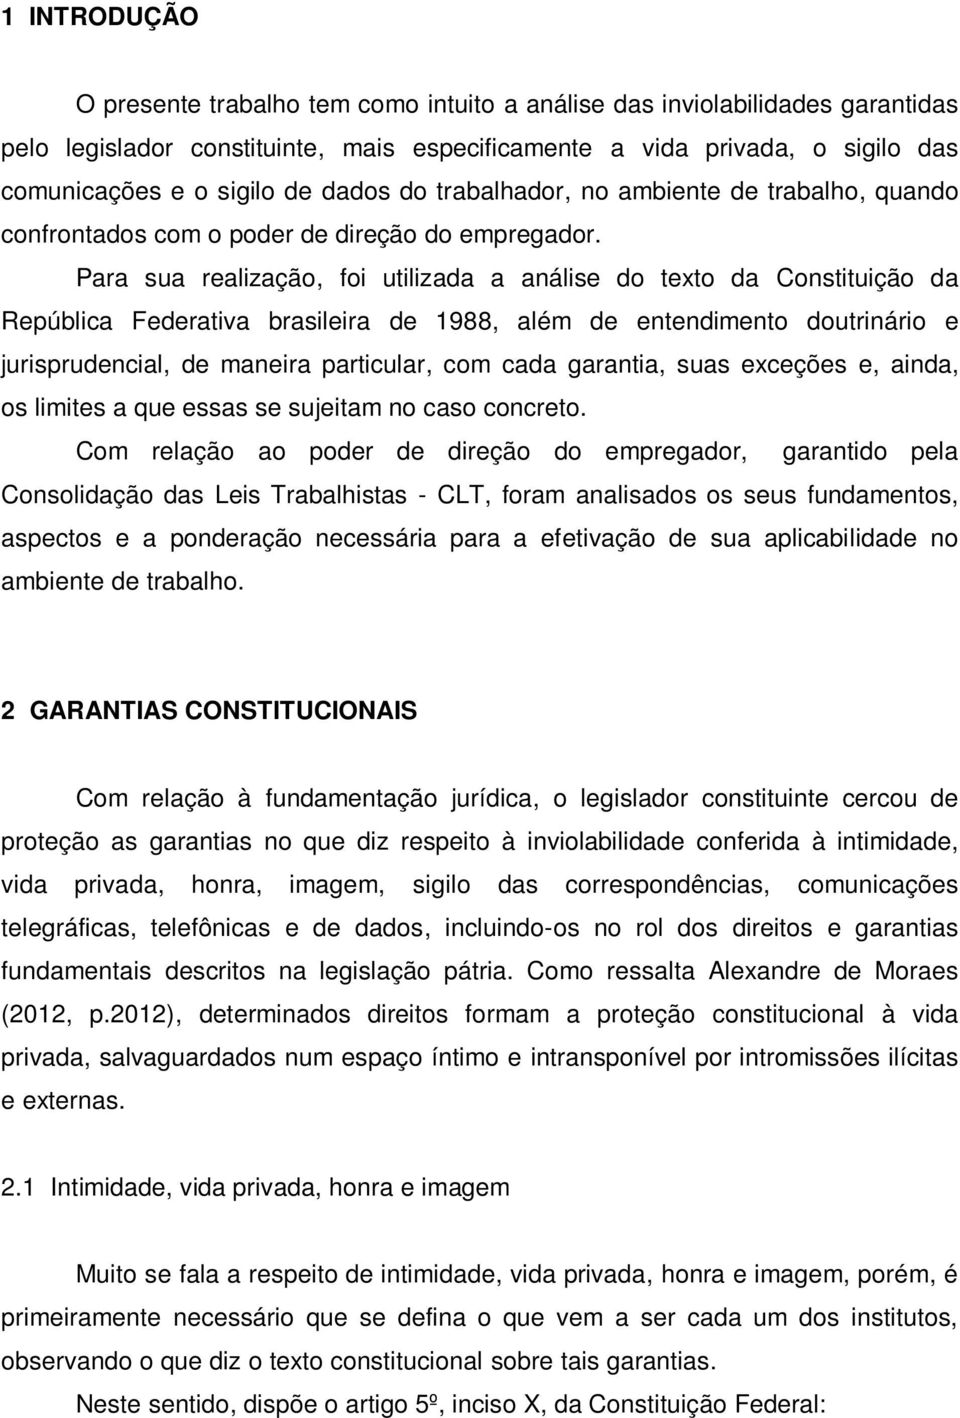 Para sua realização, foi utilizada a análise do texto da Constituição da República Federativa brasileira de 1988, além de entendimento doutrinário e jurisprudencial, de maneira particular, com cada